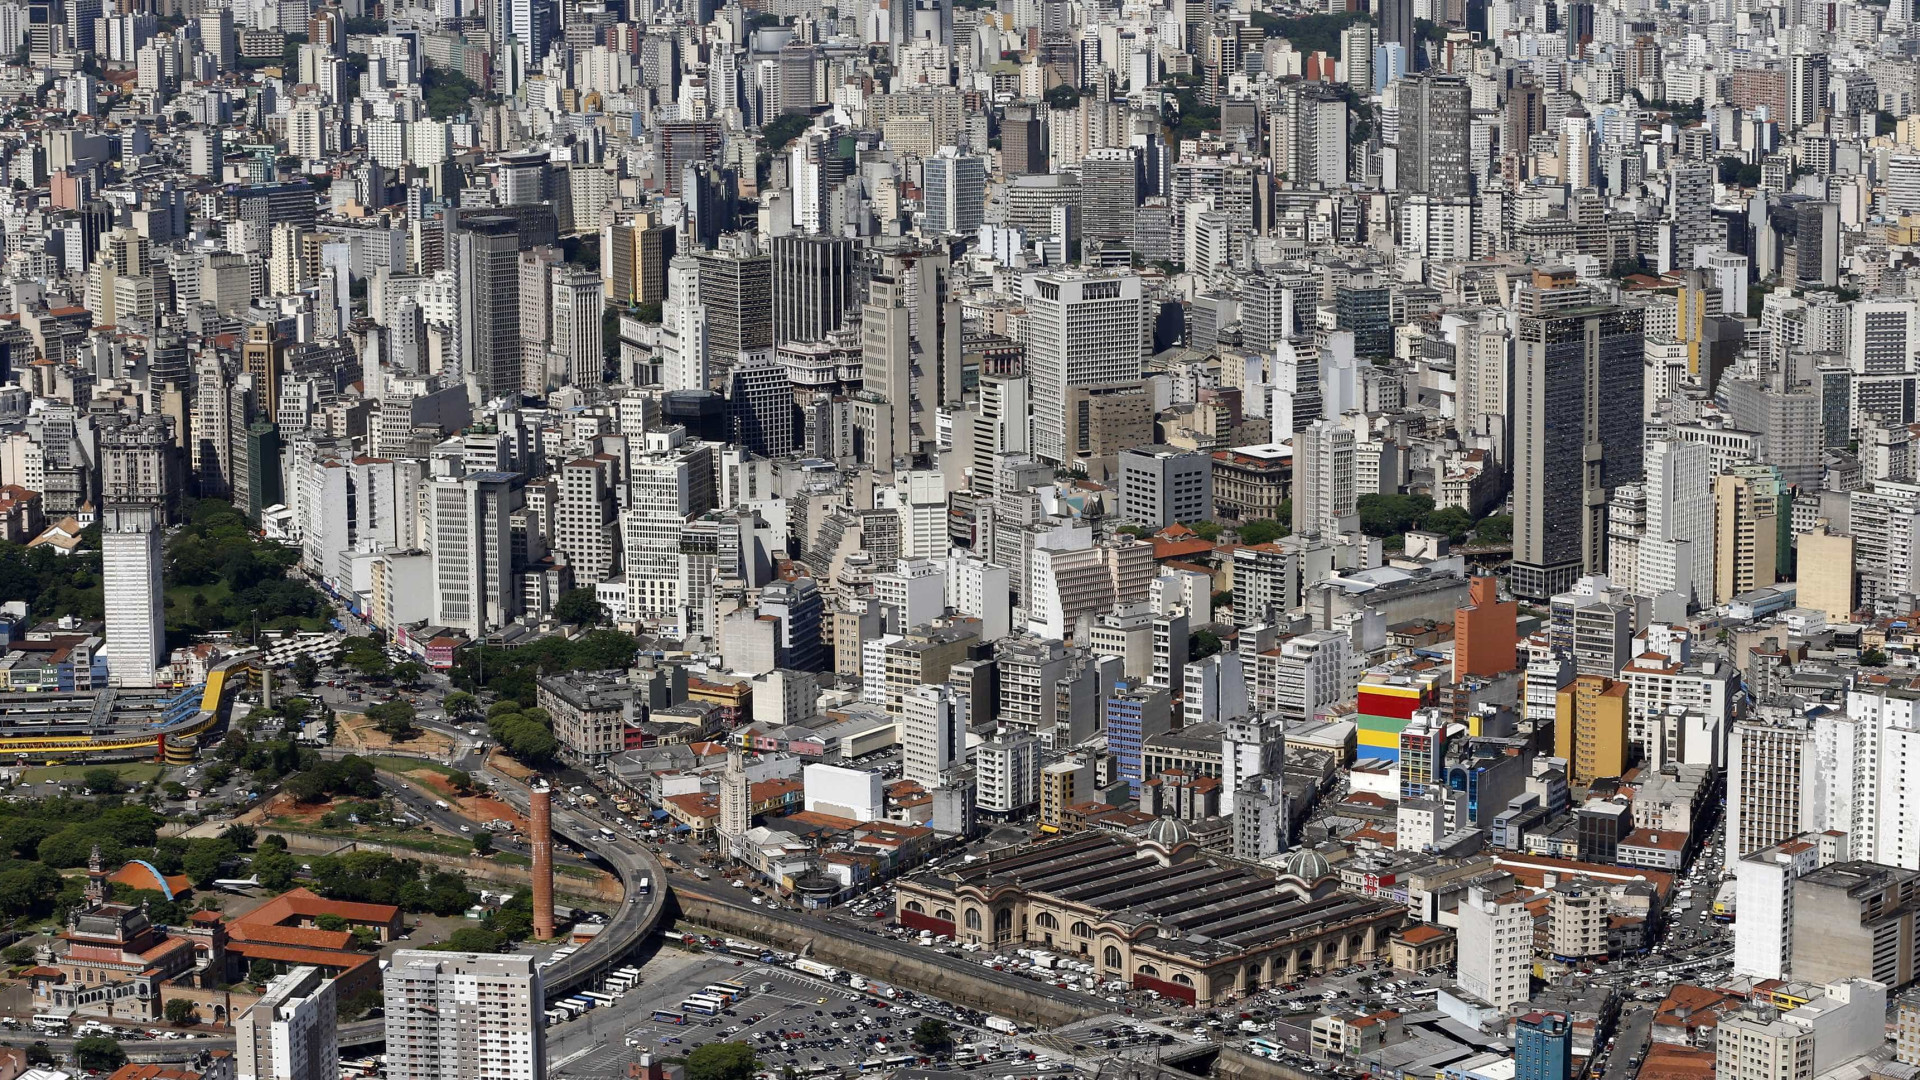 Aluguel residencial contratado recua 1,5% na cidade de São Paulo